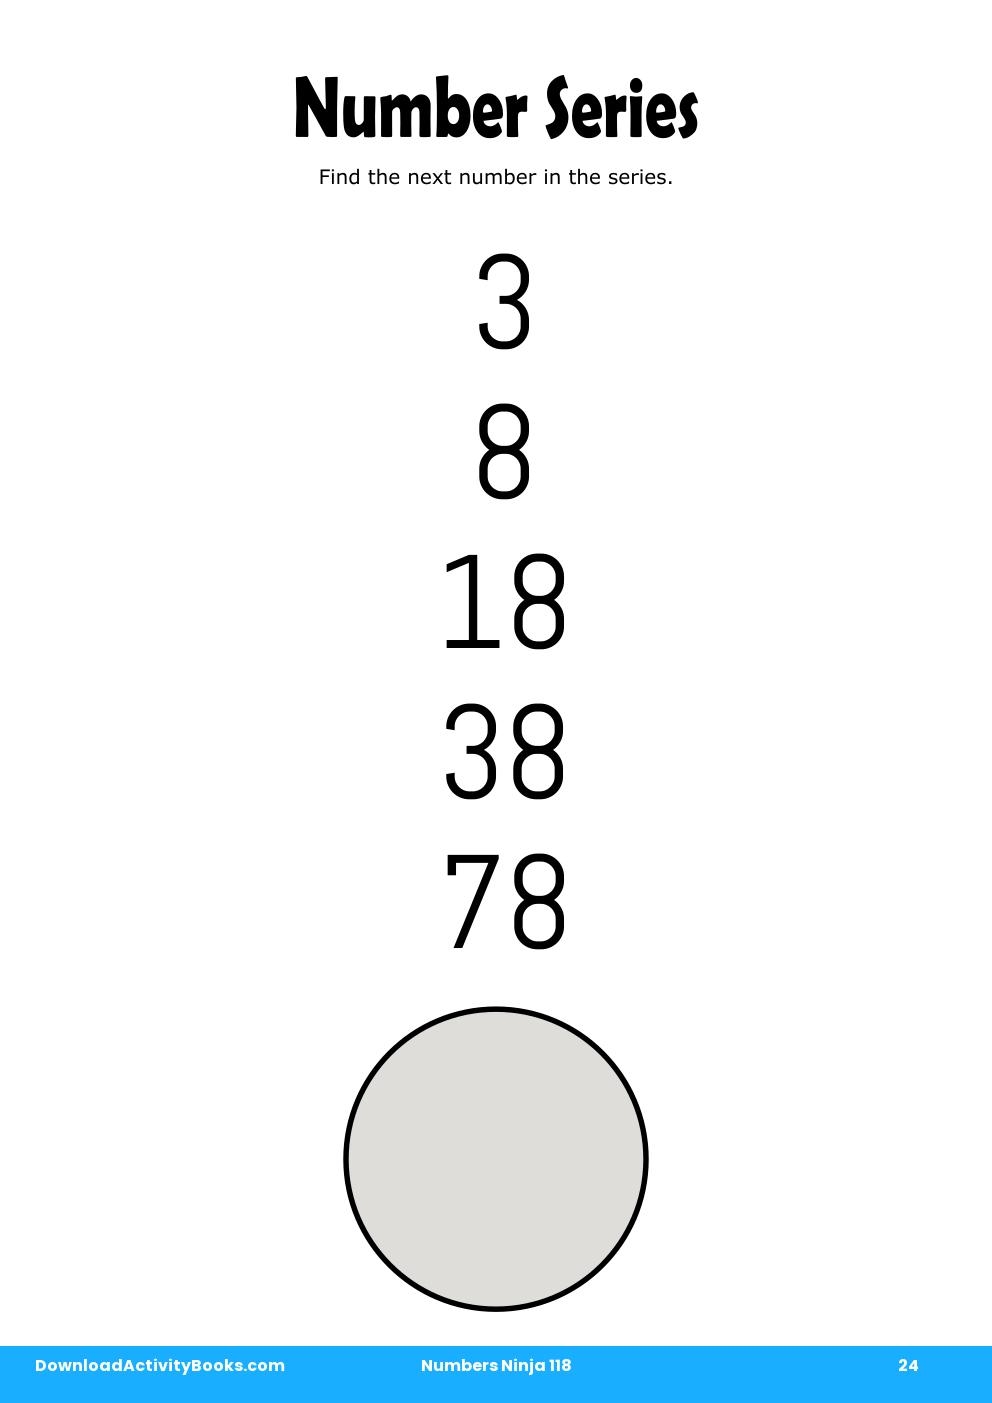 Number Series in Numbers Ninja 118